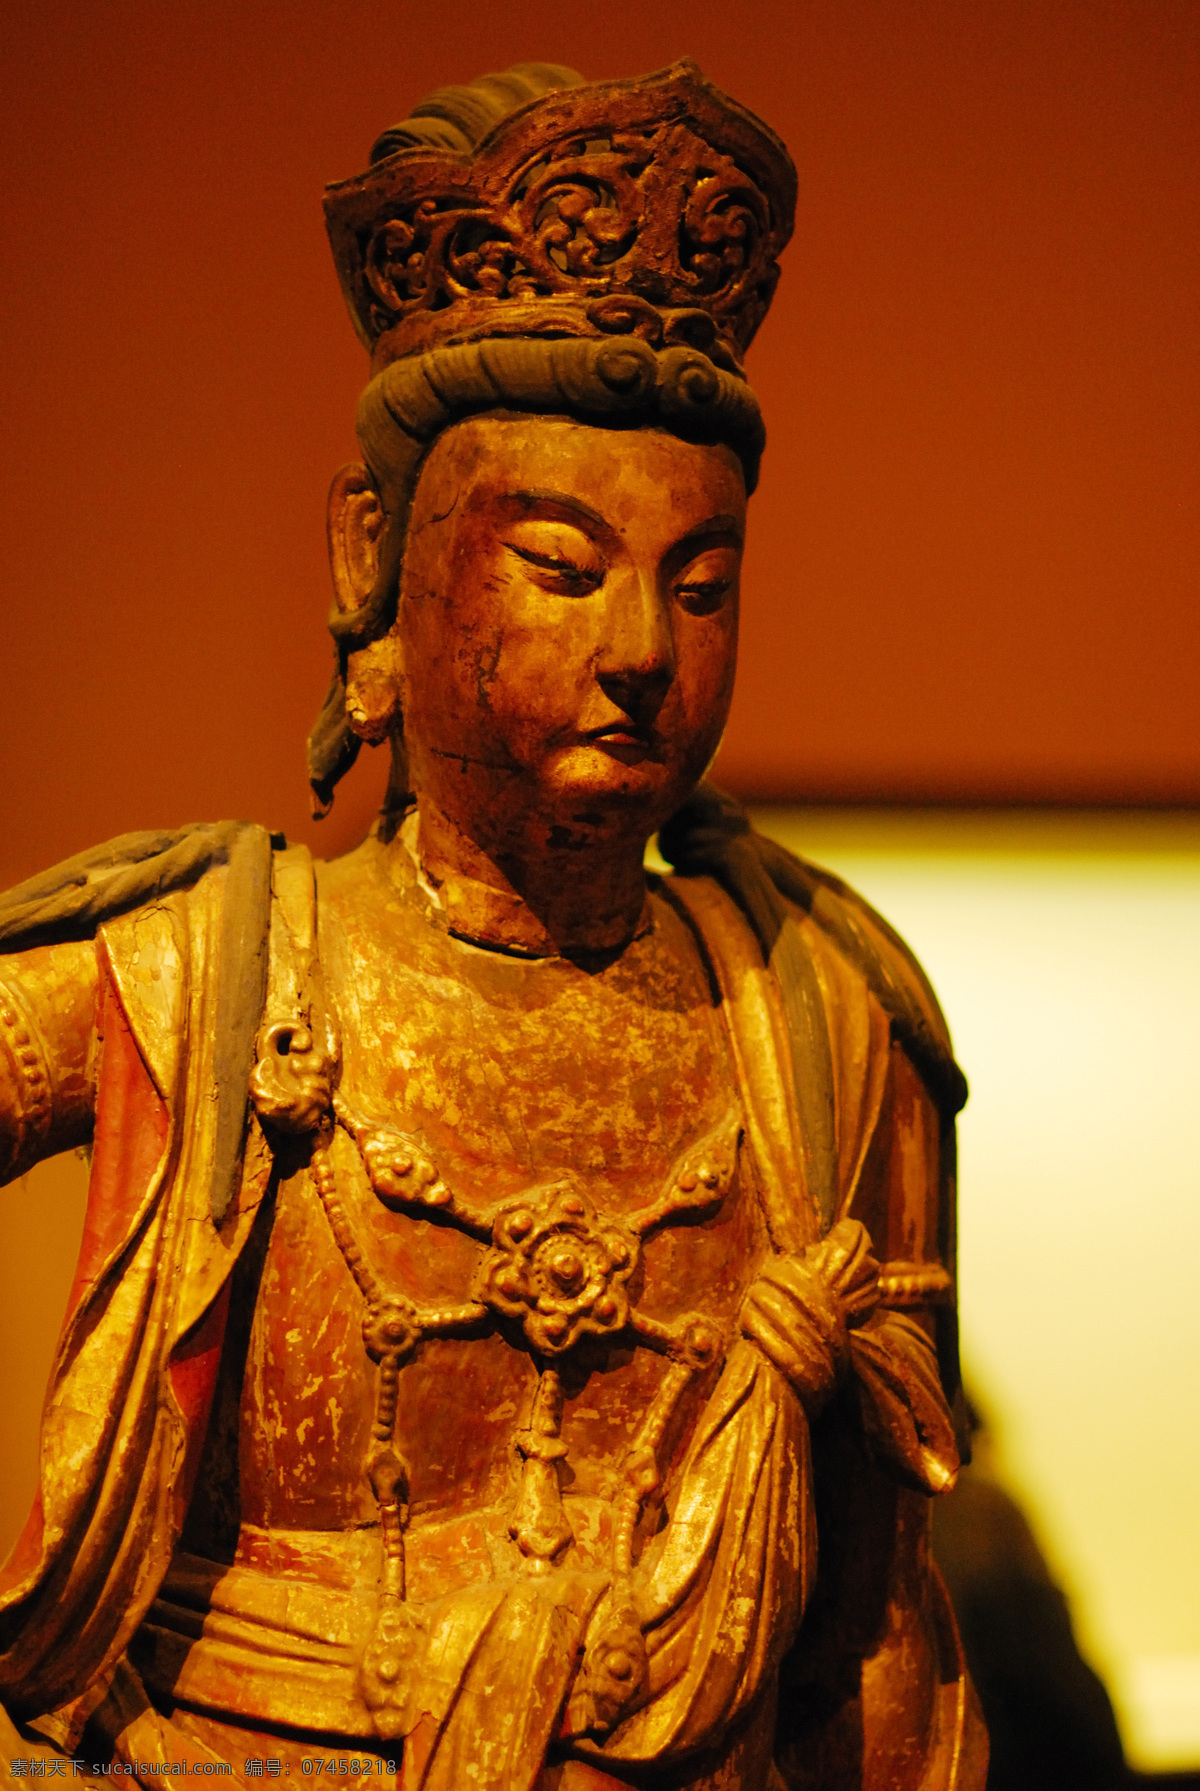 菩萨像 佛像 神像 天王 天神 雕像 石像 铜像 国宝 博物馆 收藏 珍宝 摄 国家博物馆 传统文化 文化艺术